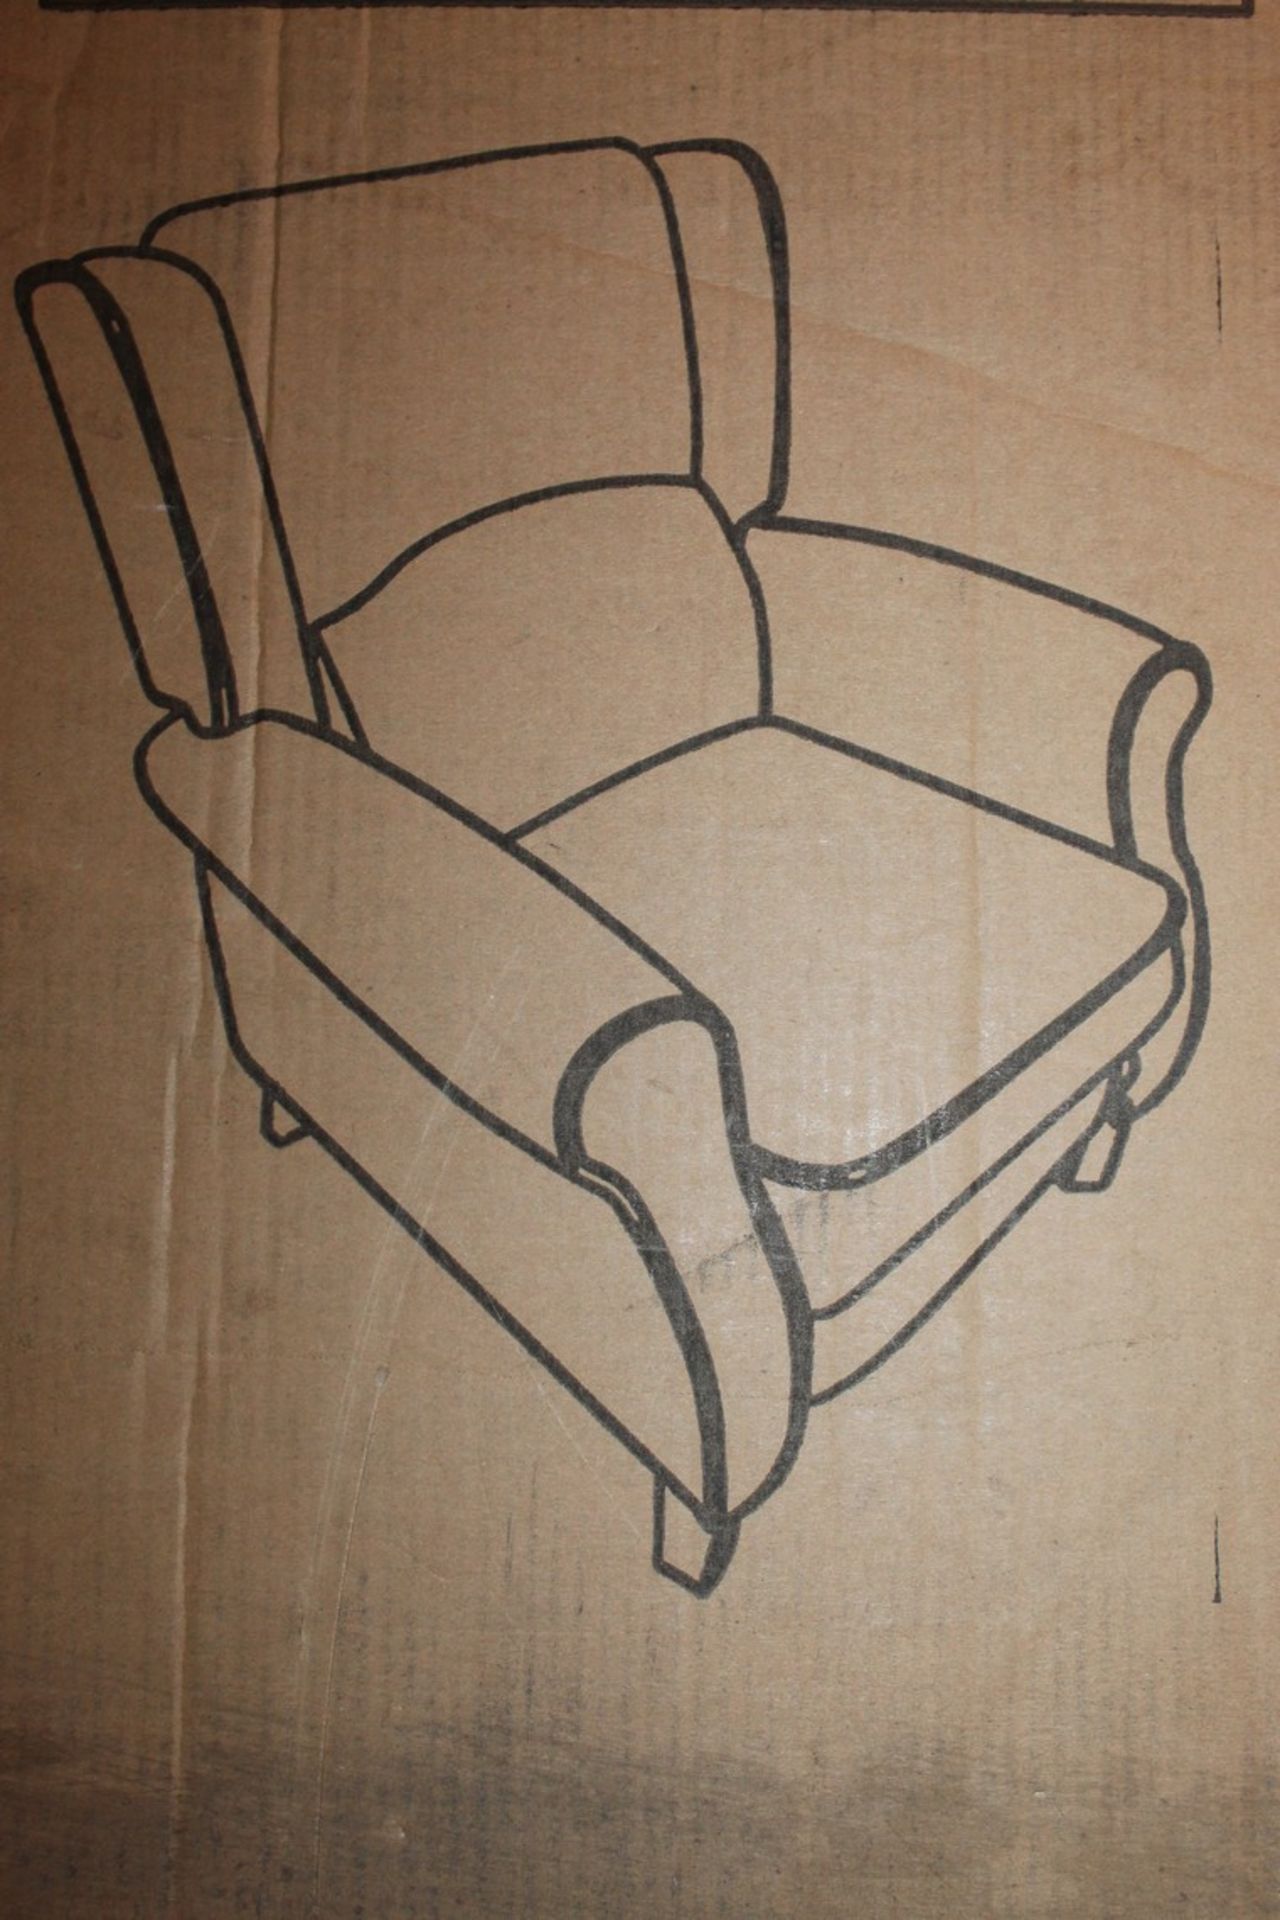 Boxed HomCom Alba Manual Recliner Chair RRP £182